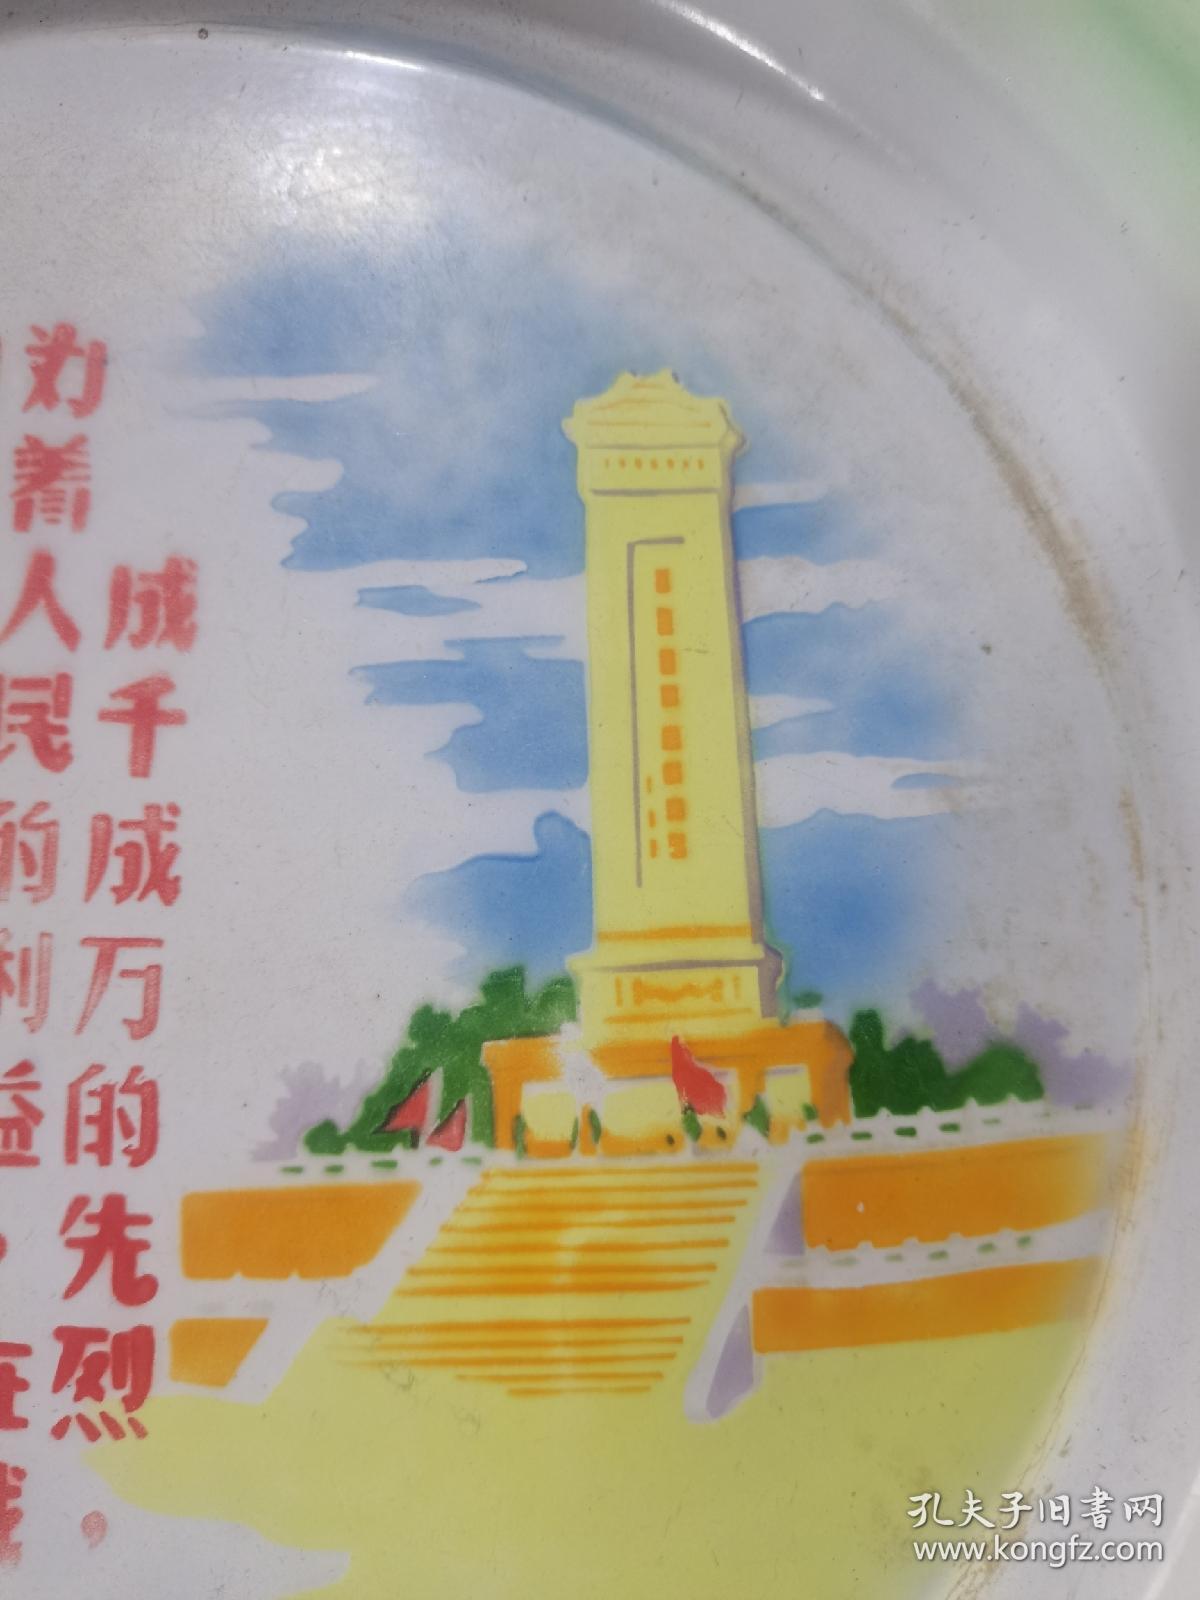 新收的，保真，1967年，带毛主席语录，人民英雄纪念碑，红旗，蓝天，白云。绿树等图案，搪瓷盘子